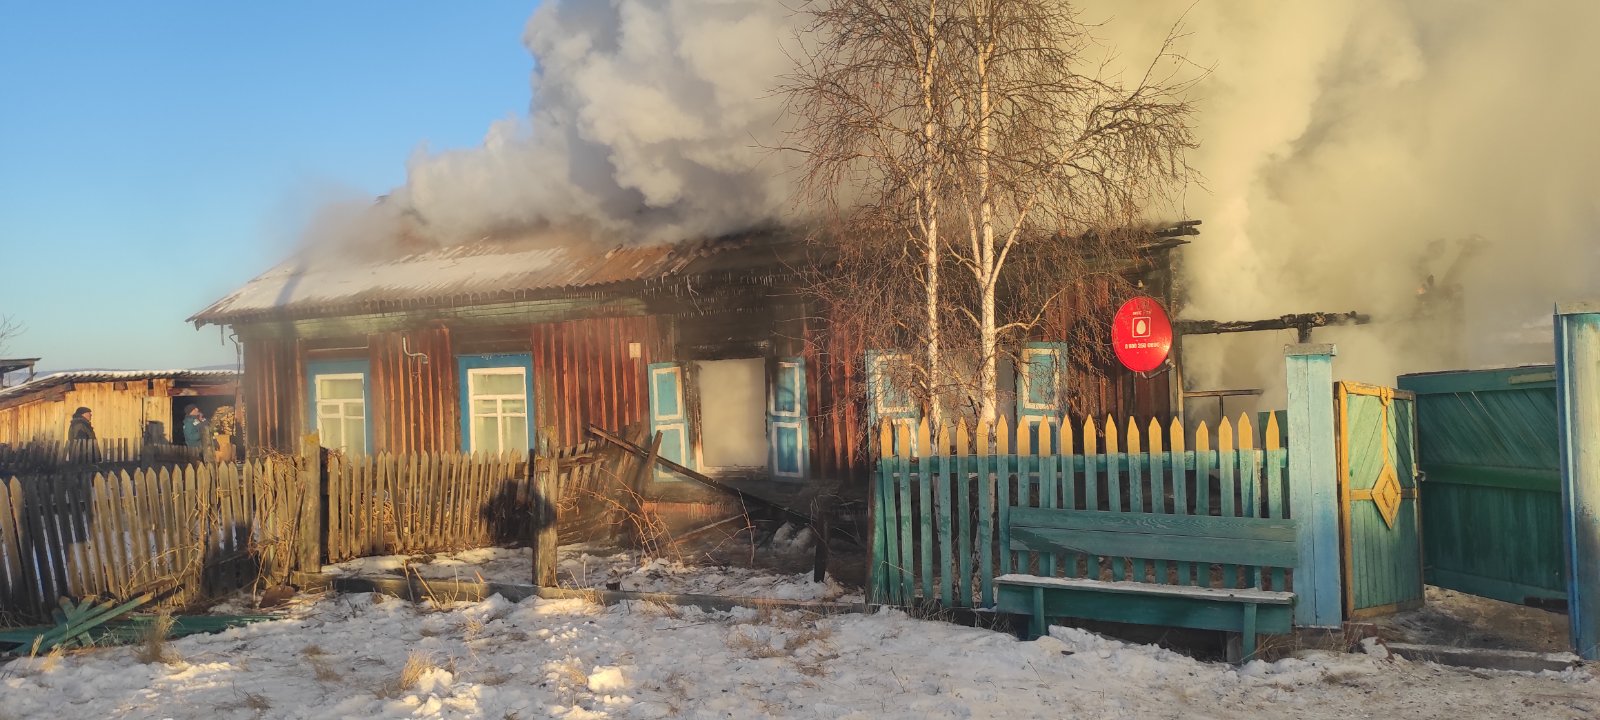 Внимание! На территории Иркутской области продолжает действовать особый противопожарный режим!